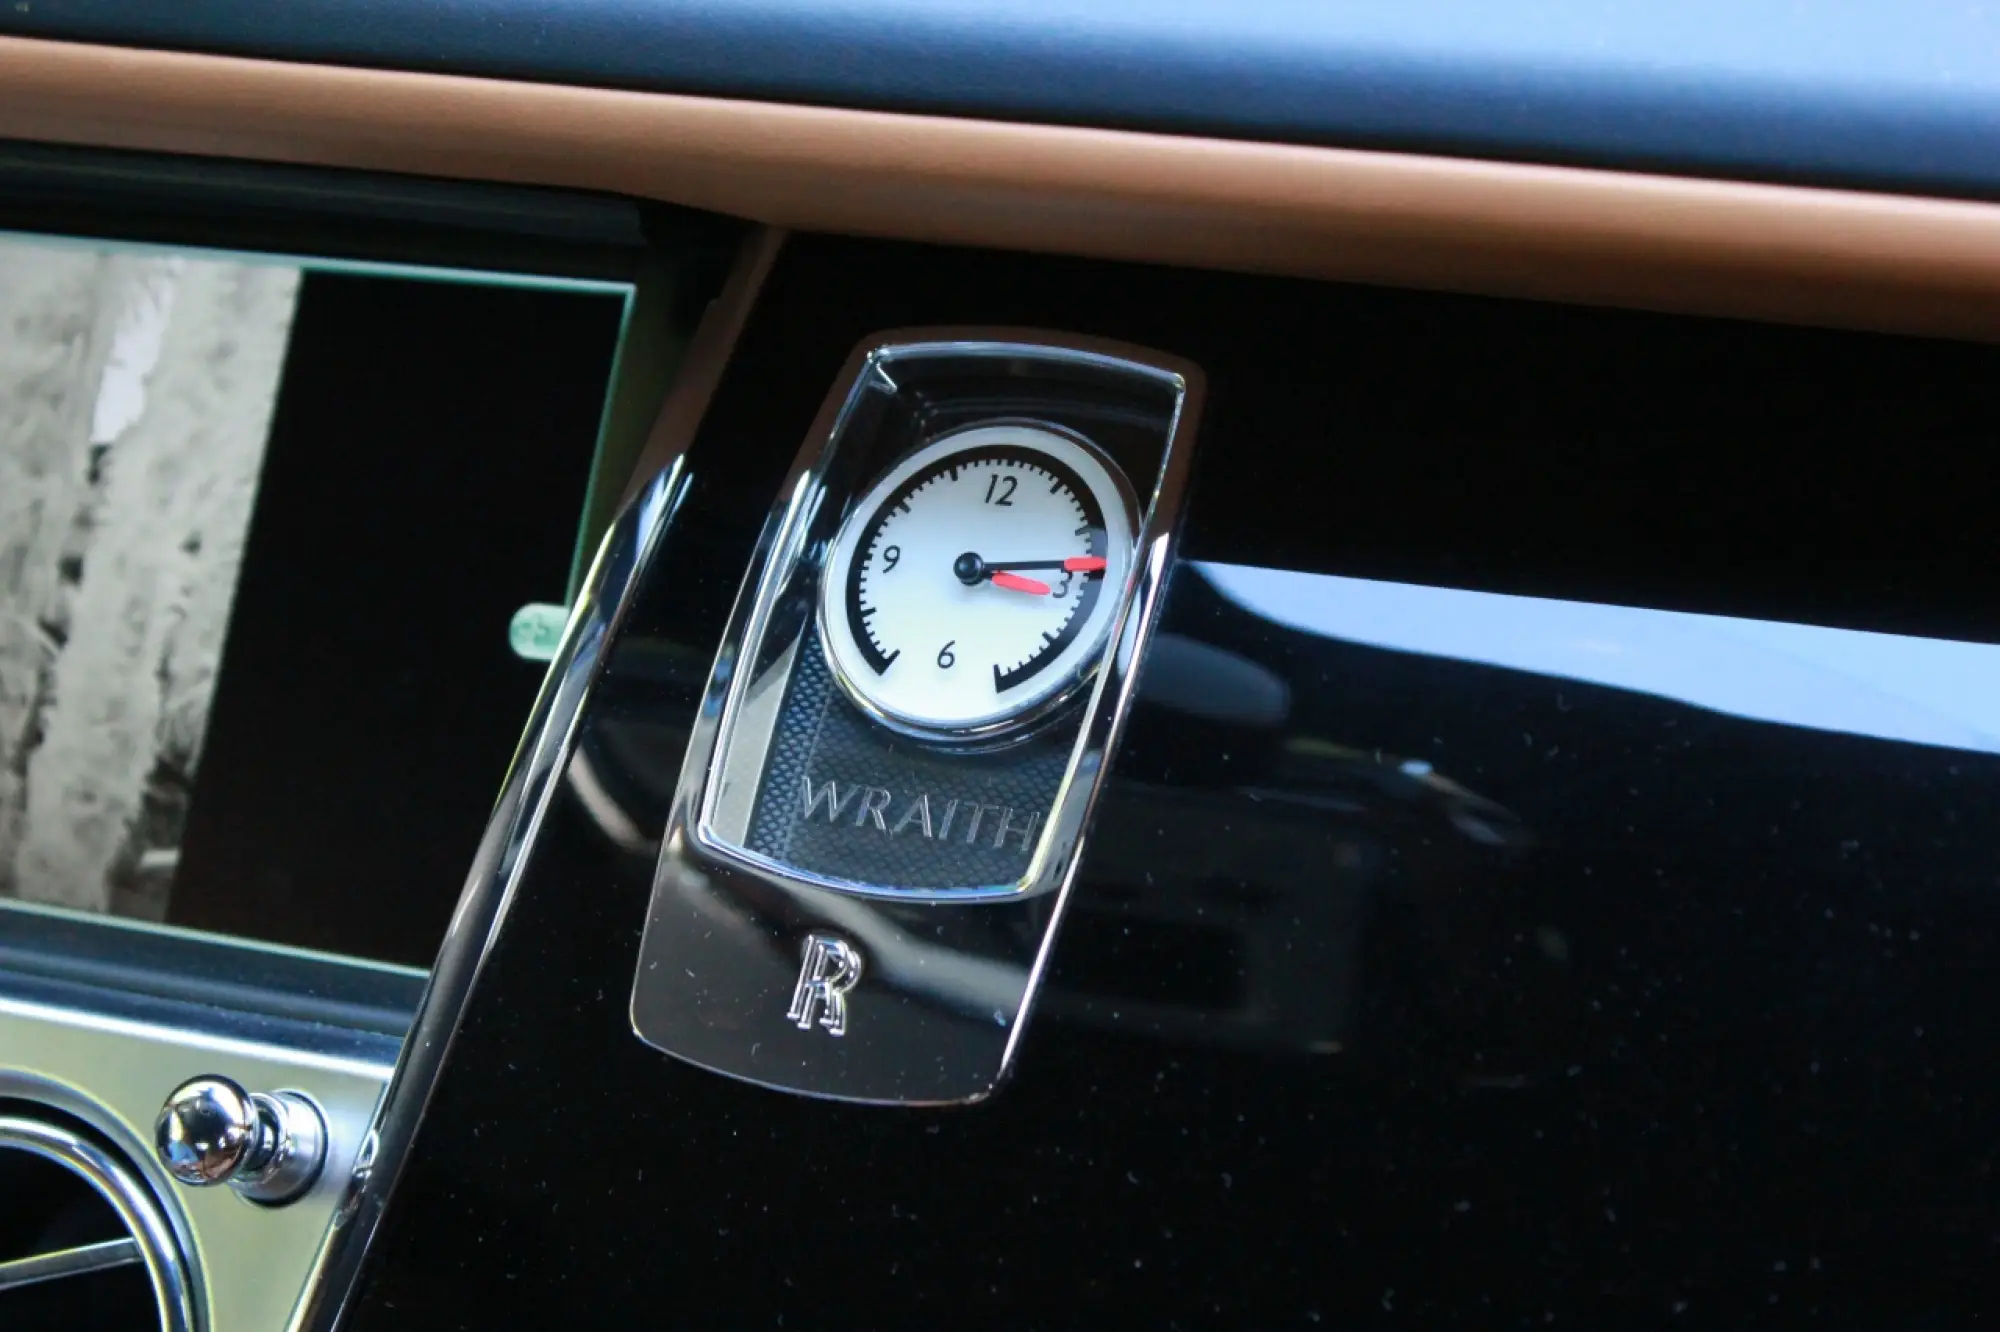 Rolls Royce Wraith - Test Drive 2014 - 264